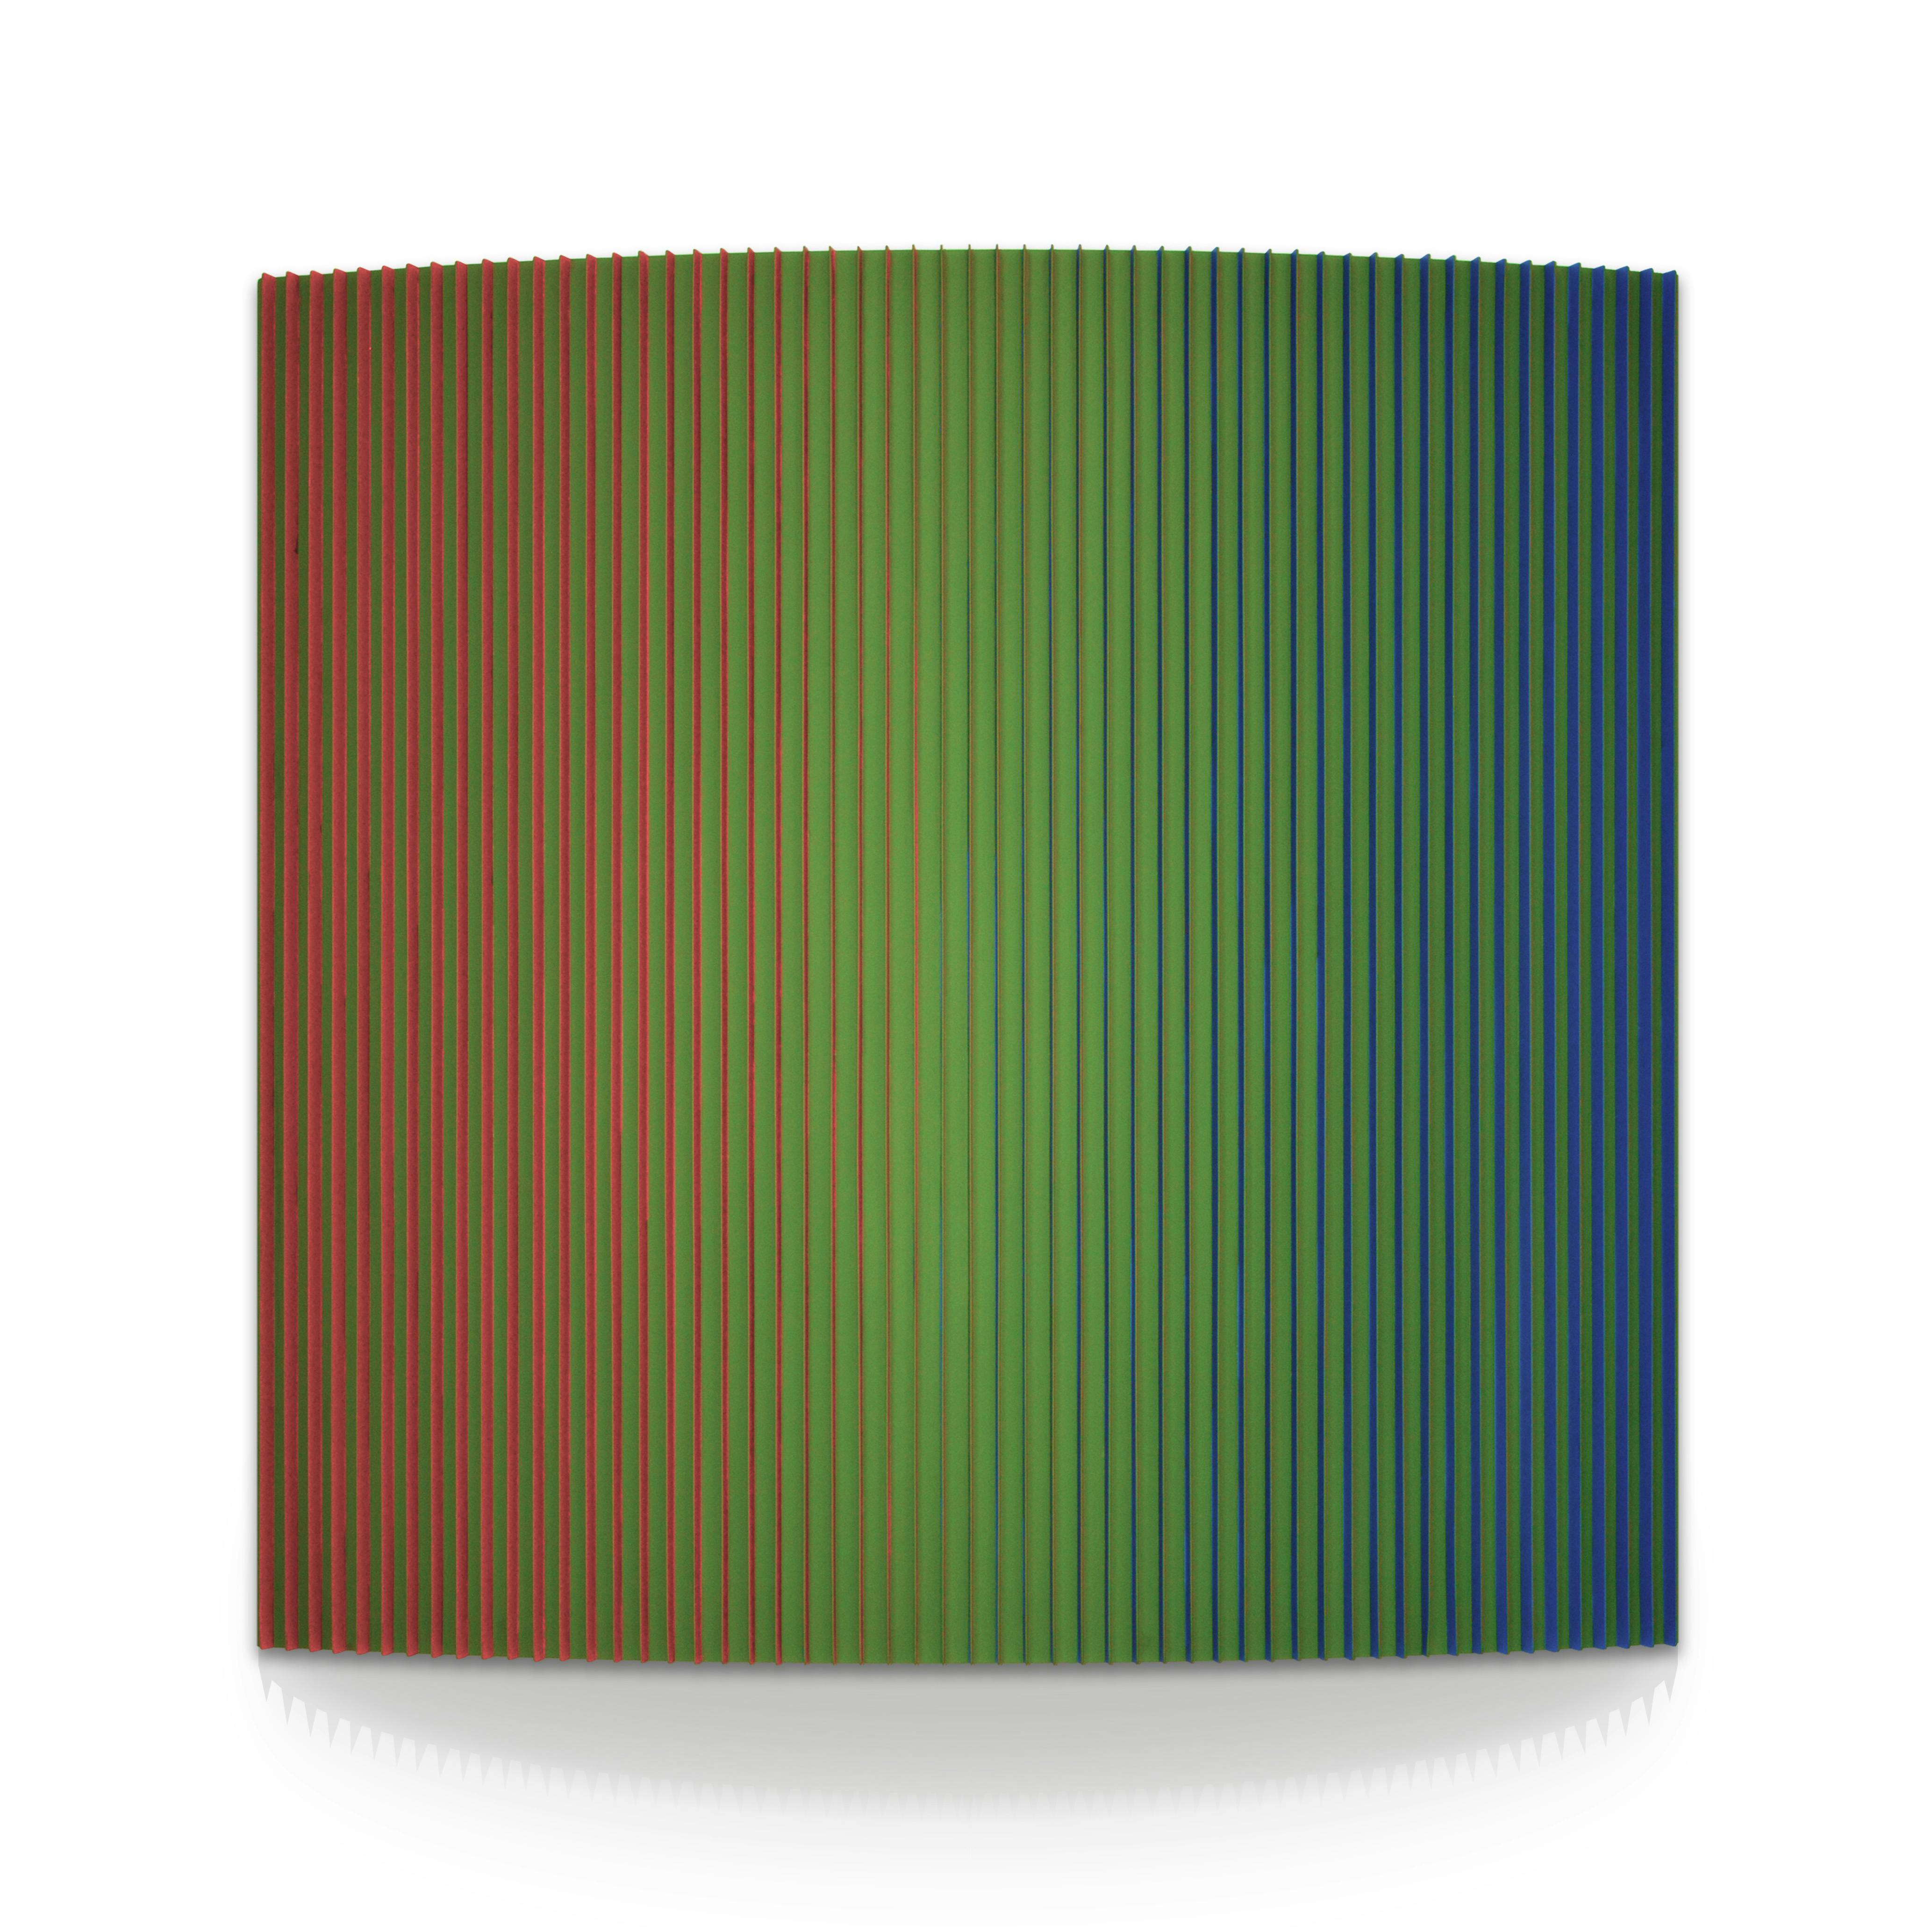 Spectrum I, 150 x 150 cm, Email auf Aluminium, 2020